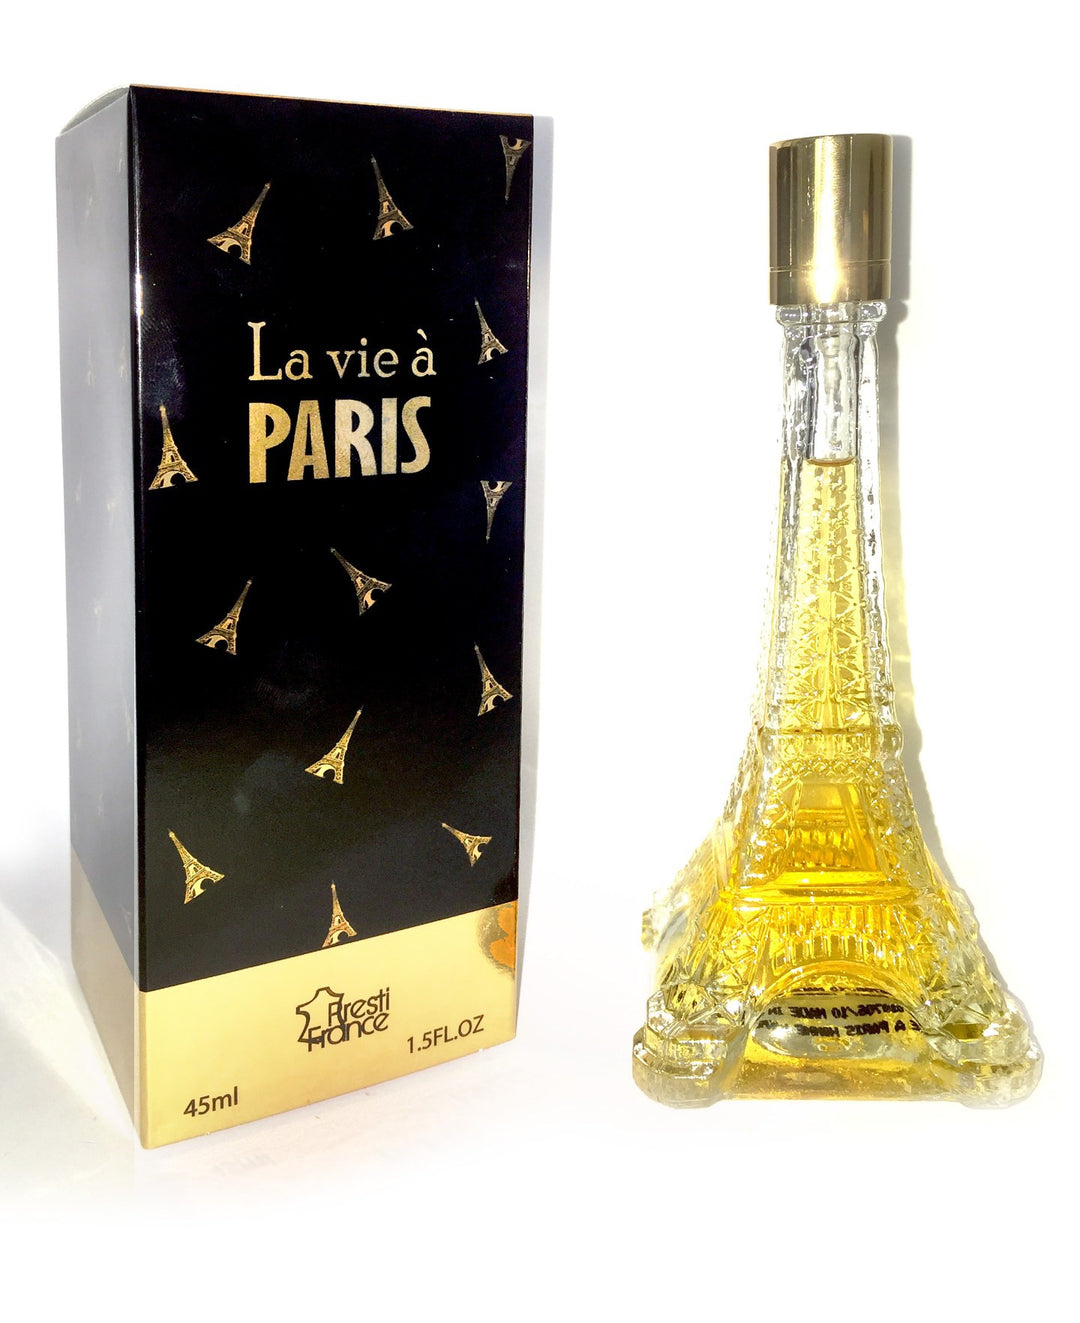 Parfume Torre Eiffel Paris made in France - best souvenirs Paris